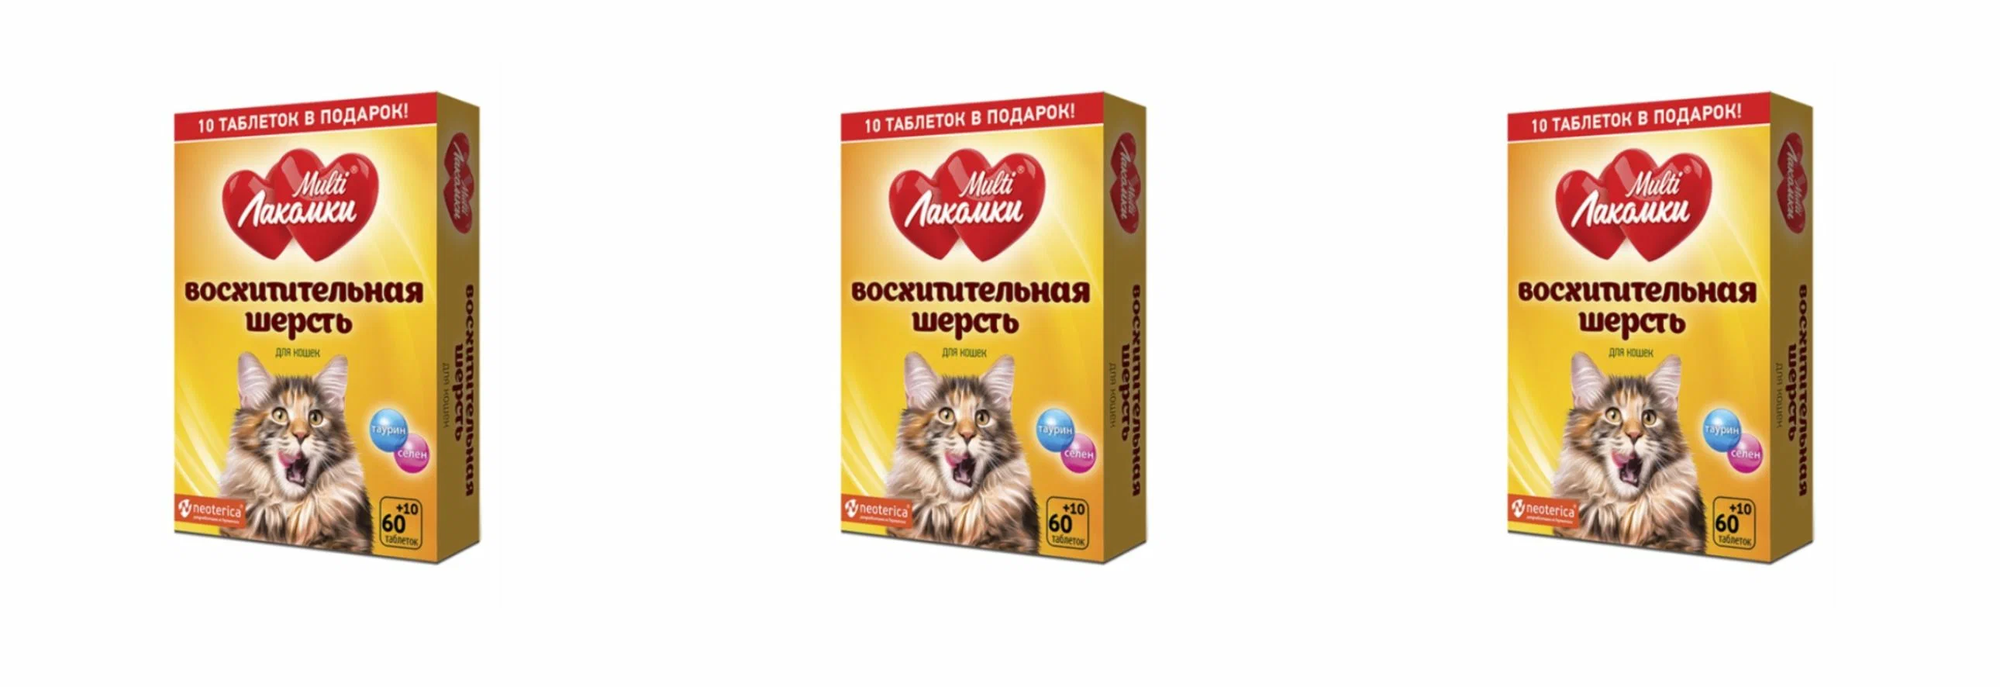 Кормовая добавка Multi Лакомки для кошек Восхитительная шерсть , 70 таб. х 3 уп.